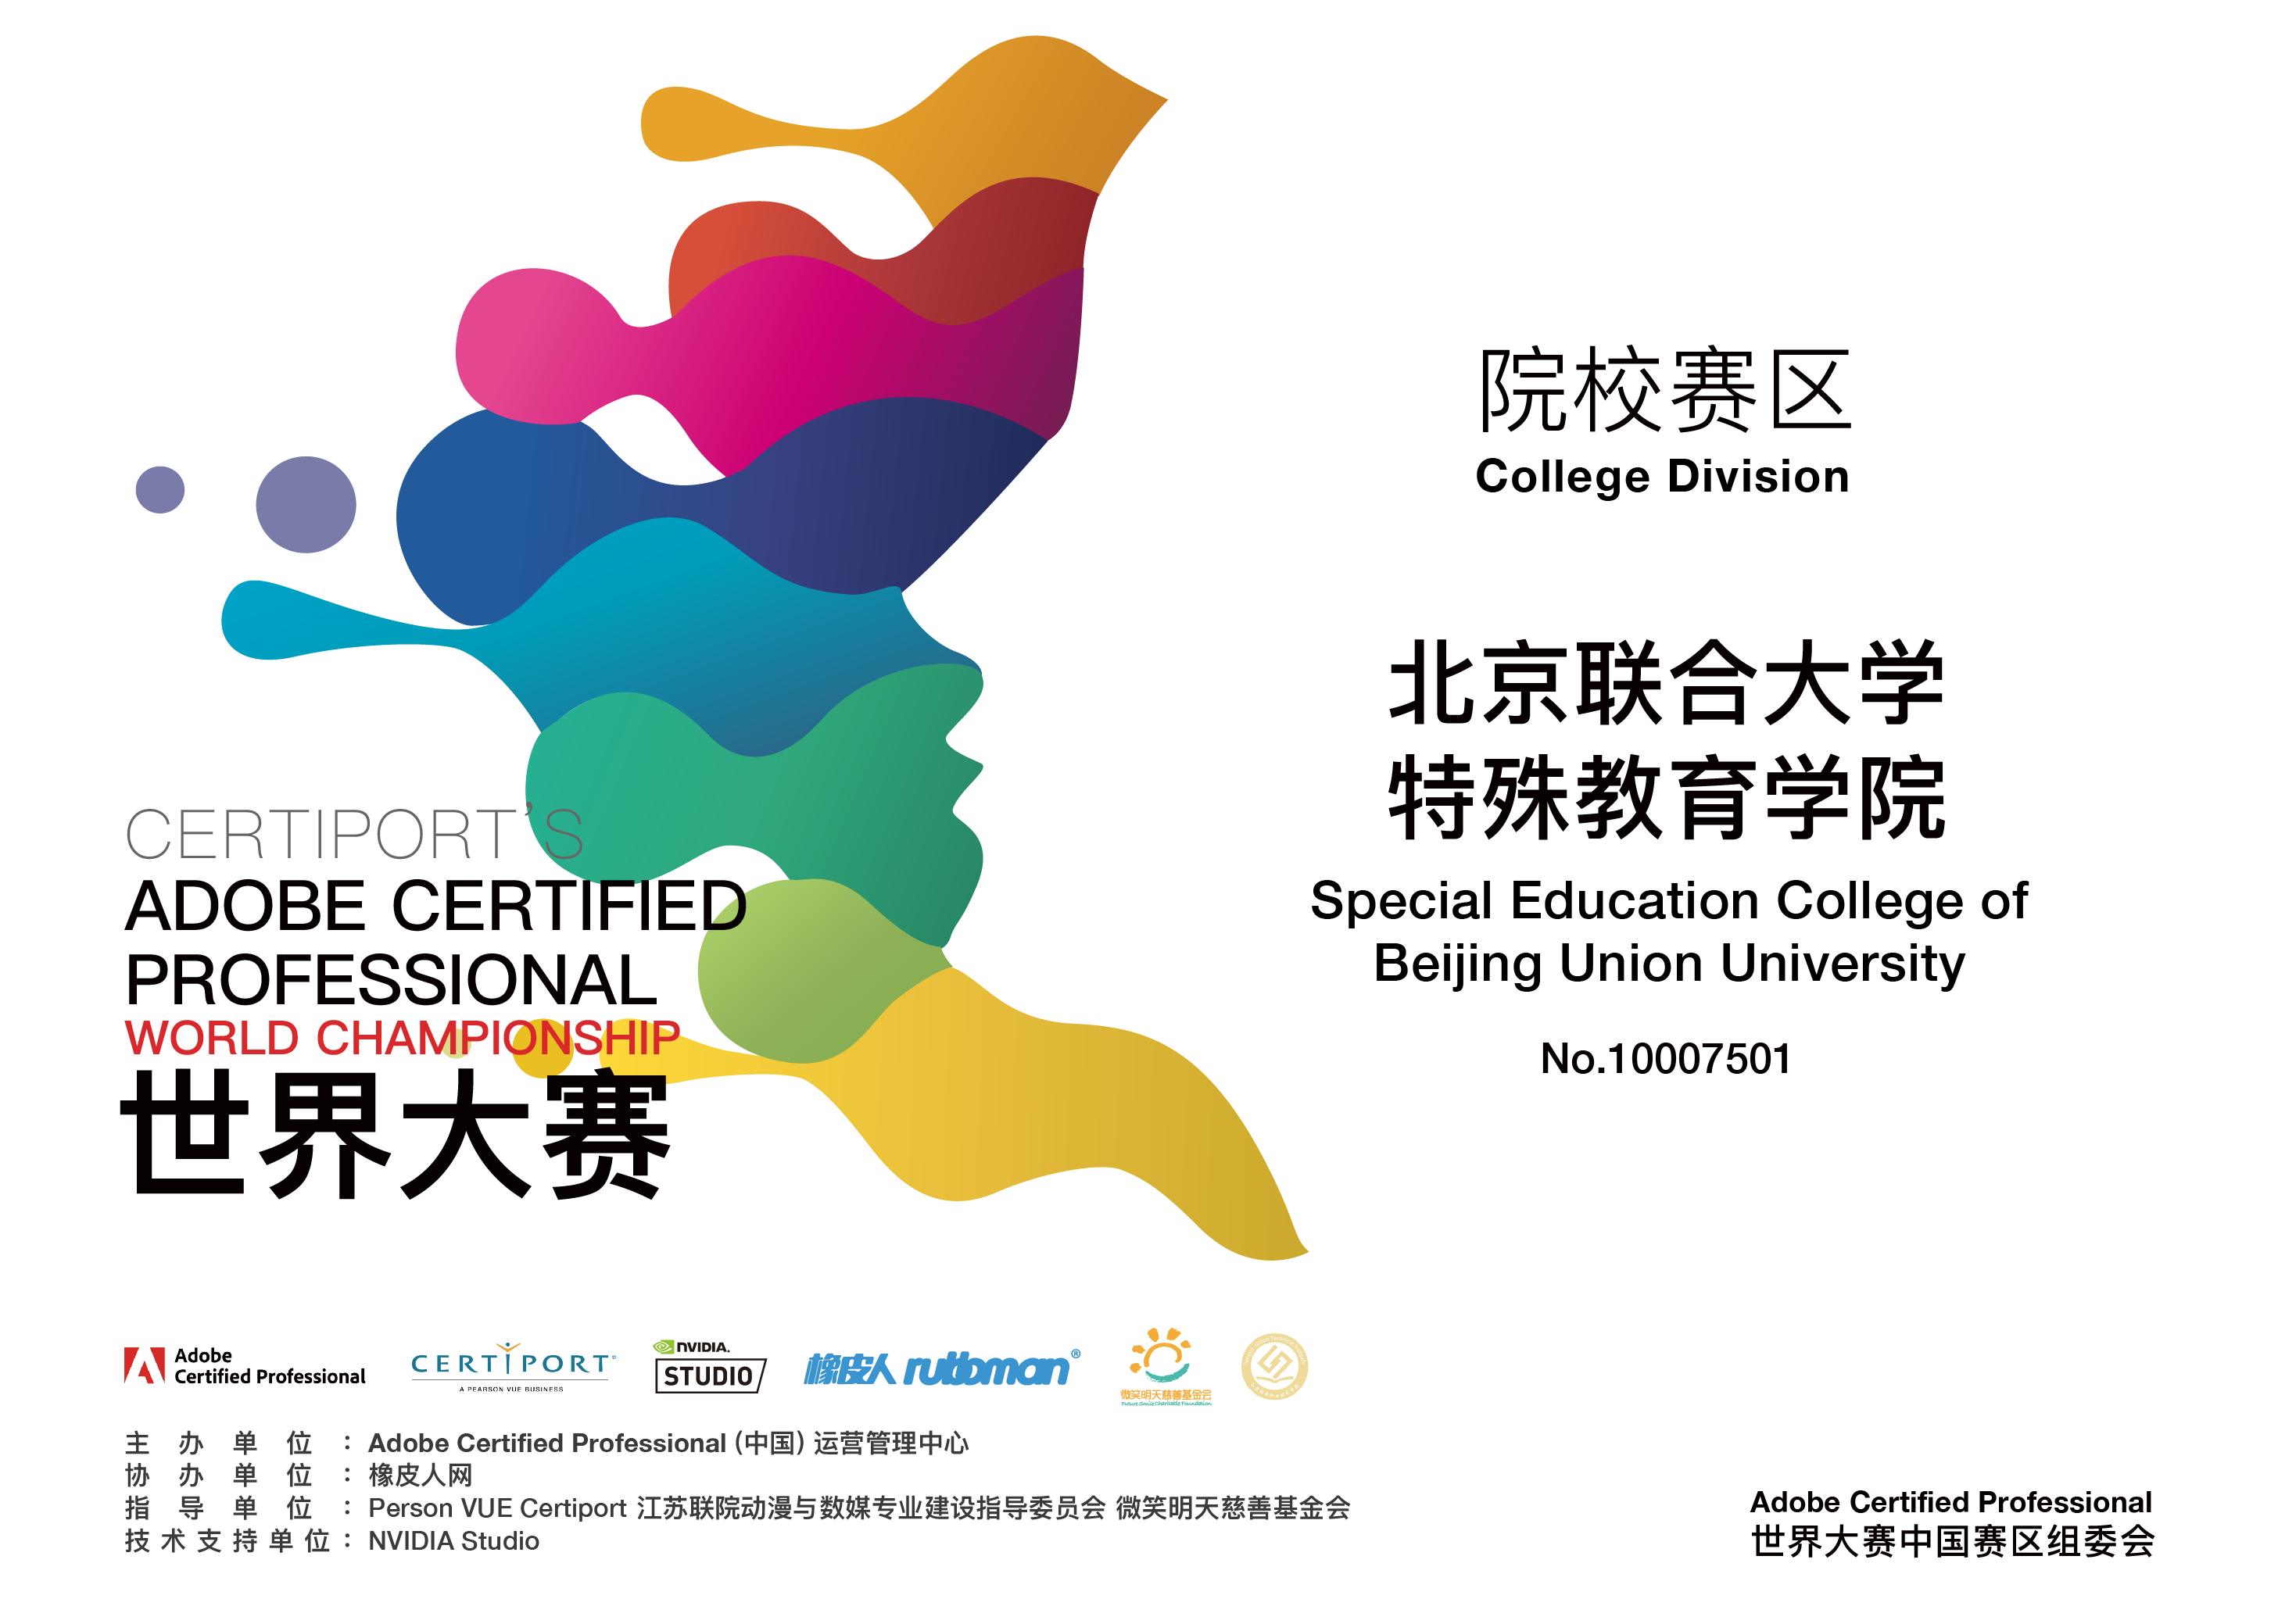 北京联合大学特殊教育学院加入ACP世界大赛，建立人才培养基地